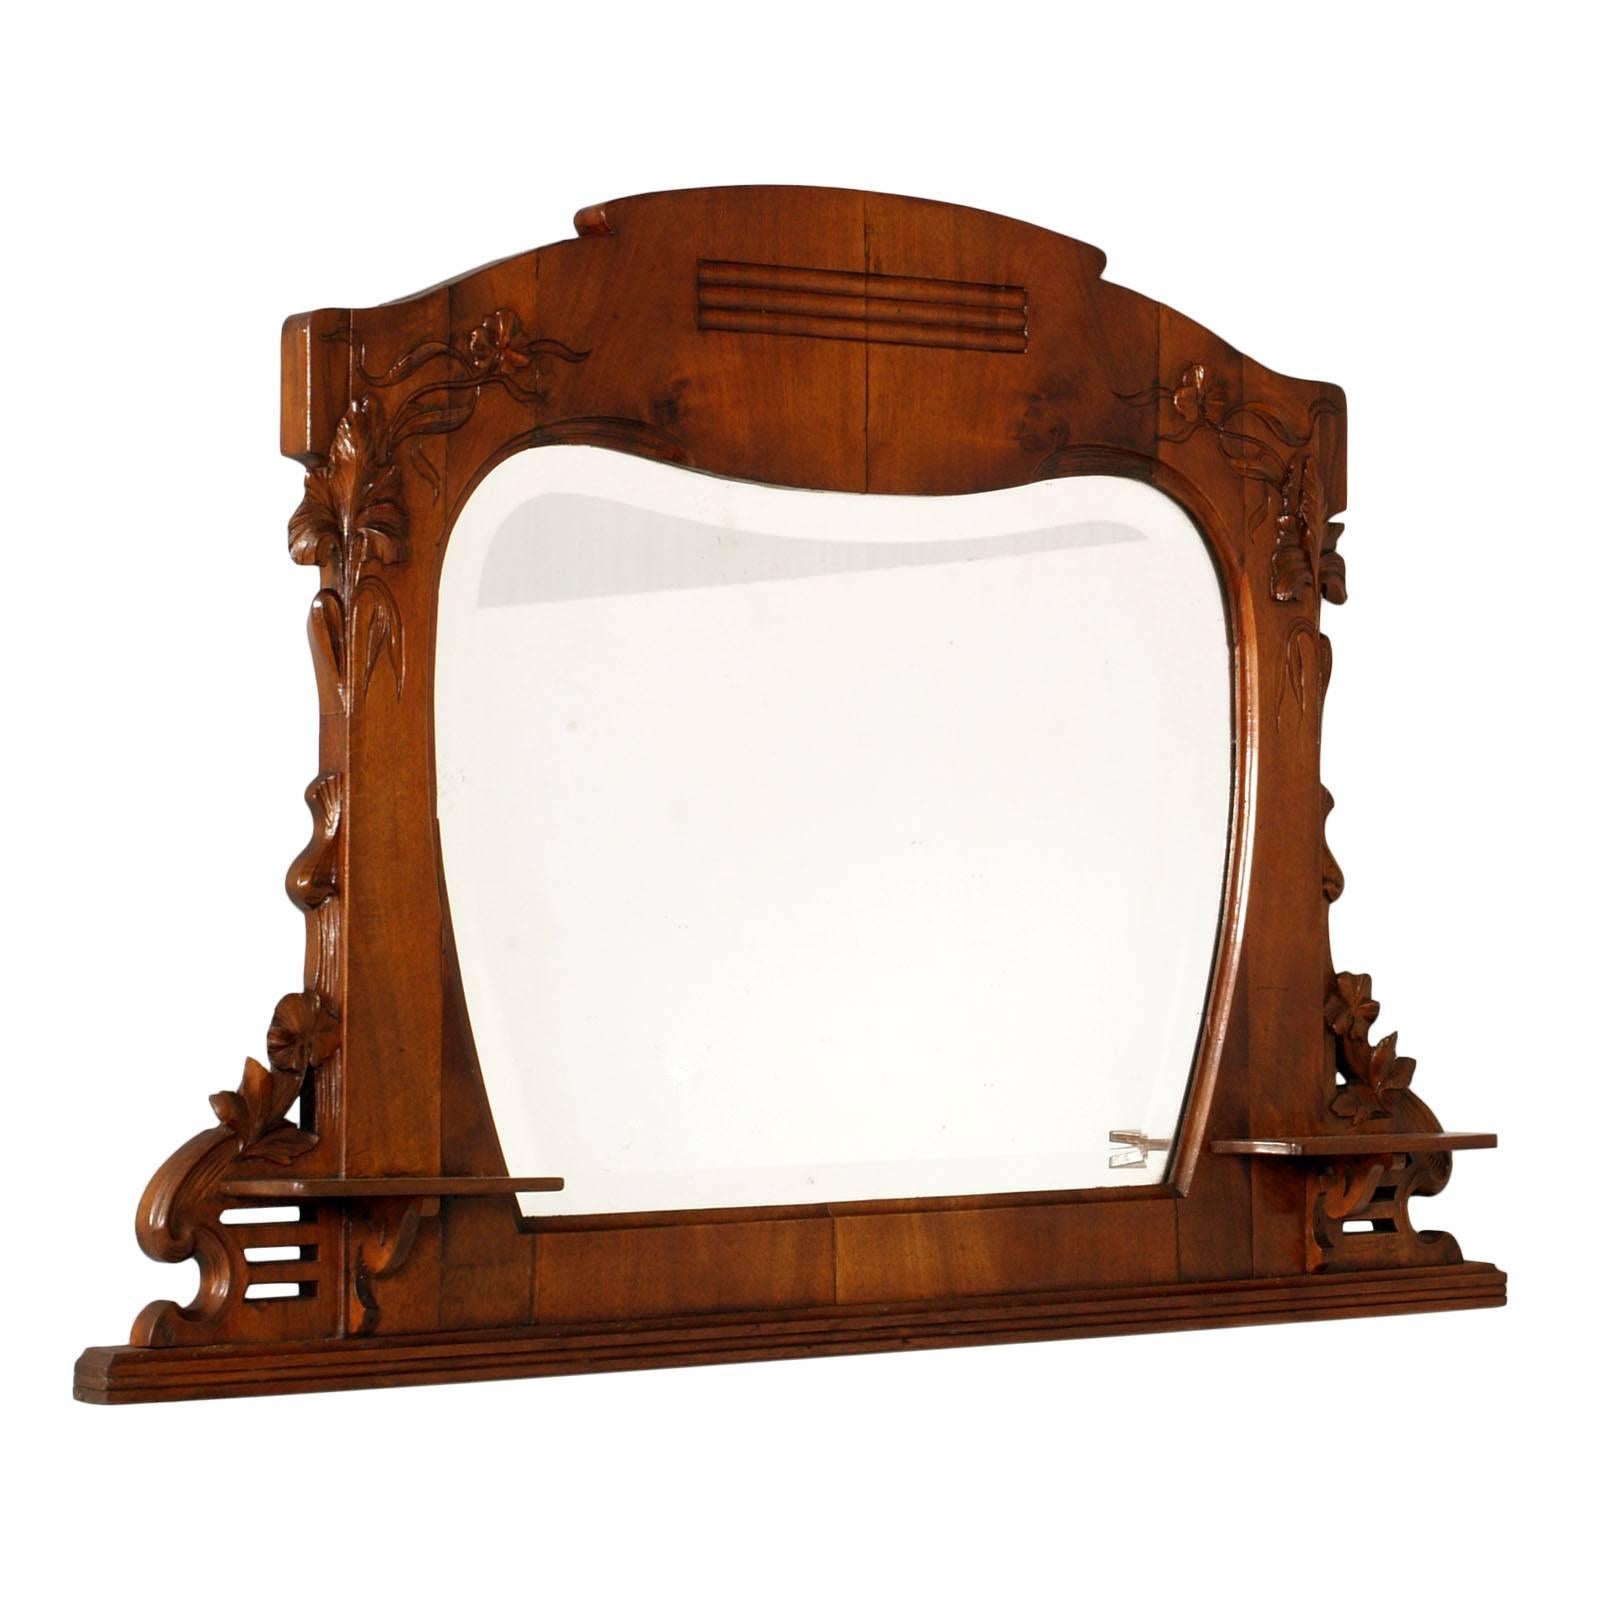 Spiegel im Art nouveau-Stil des frühen 20. Jahrhunderts von Testolini & Salviati, geschnitztes Nussbaumholz